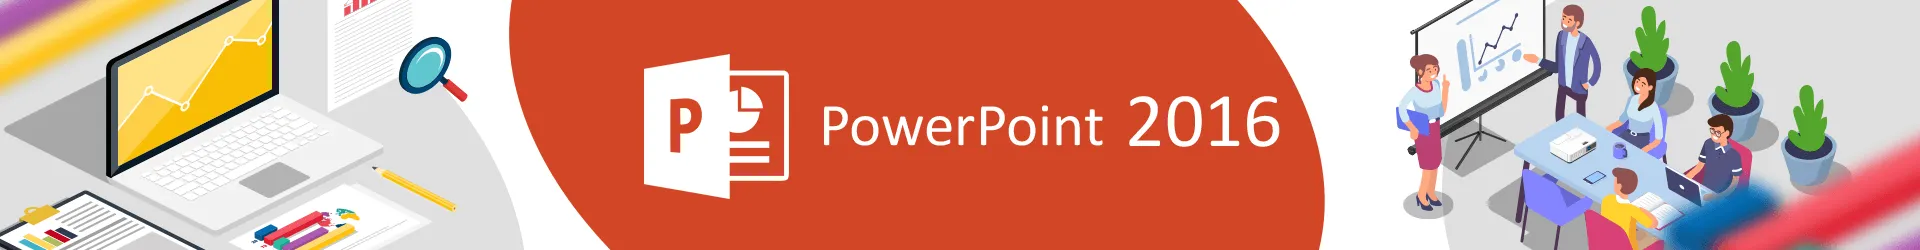 Formation PowerPoint 2016 : consolider ses connaissances et se perfectionner 
Cours en E-learning avec tutorat